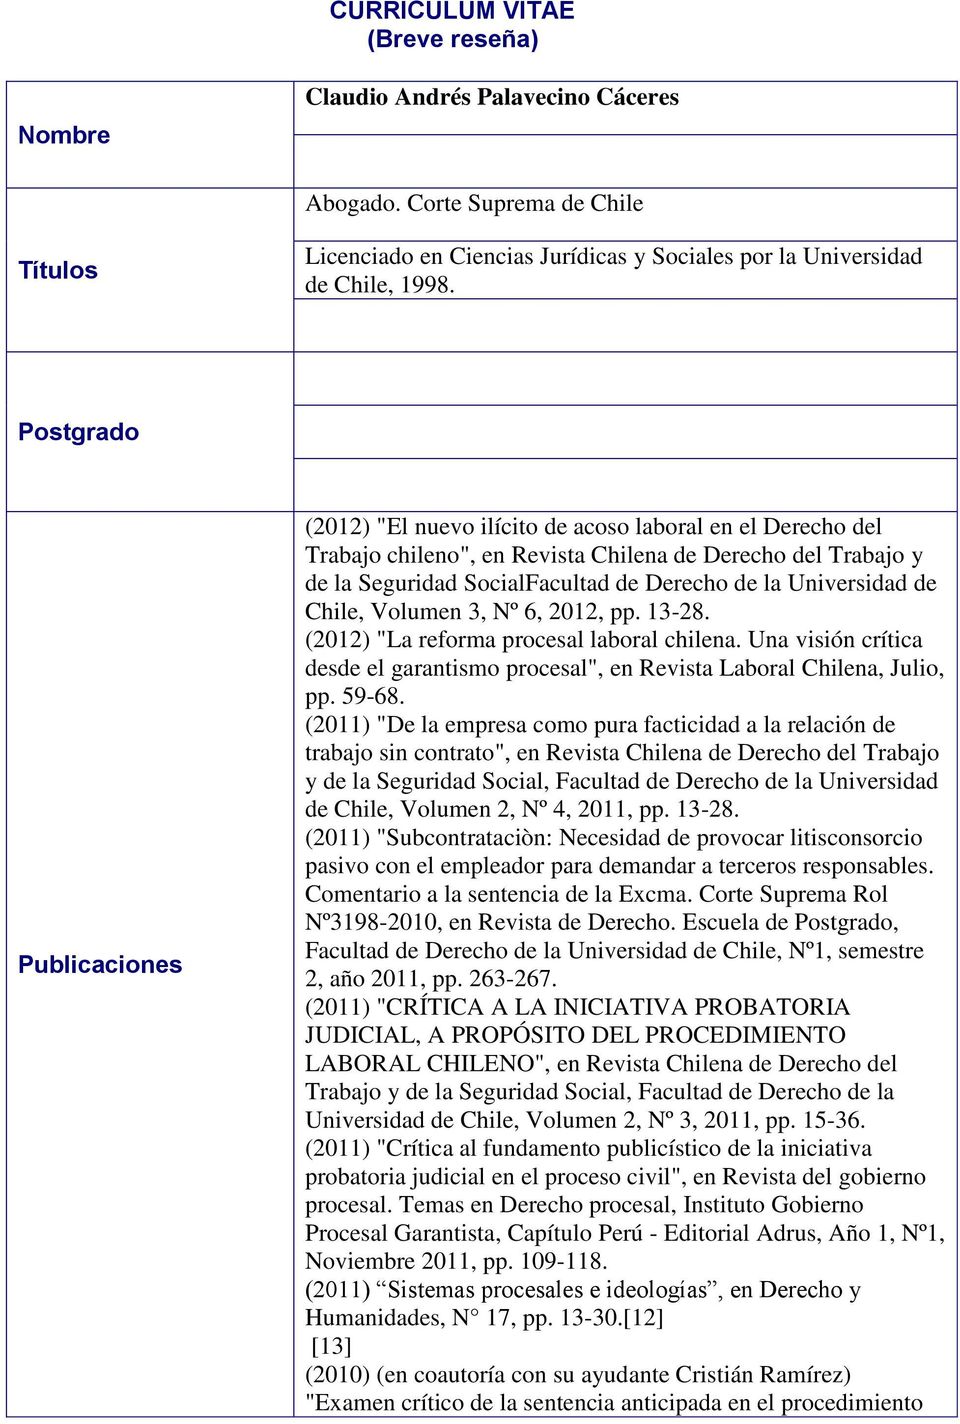 Universidad de Chile, Volumen 3, Nº 6, 2012, pp. 13-28. (2012) "La reforma procesal laboral chilena. Una visión crítica desde el garantismo procesal", en Revista Laboral Chilena, Julio, pp. 59-68.